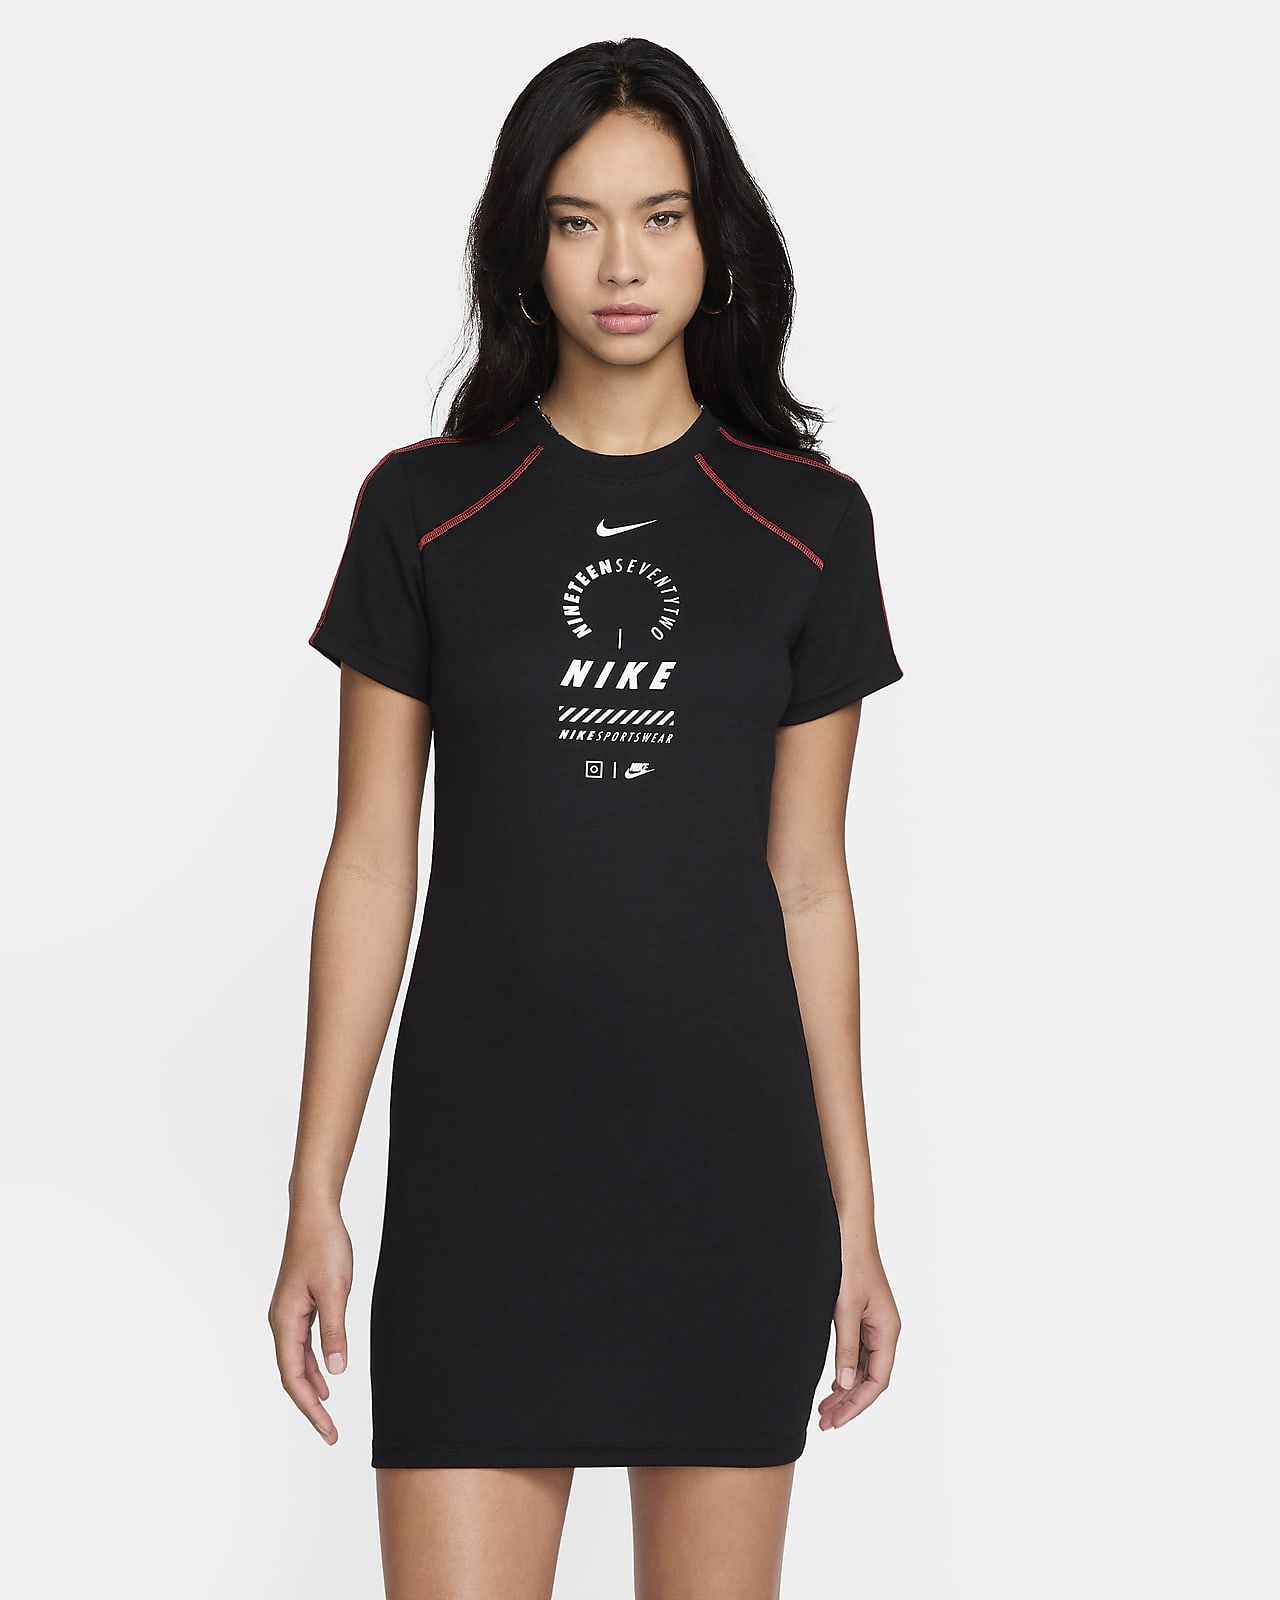 Nike Sportswear Women's Short-Sleeve Dress